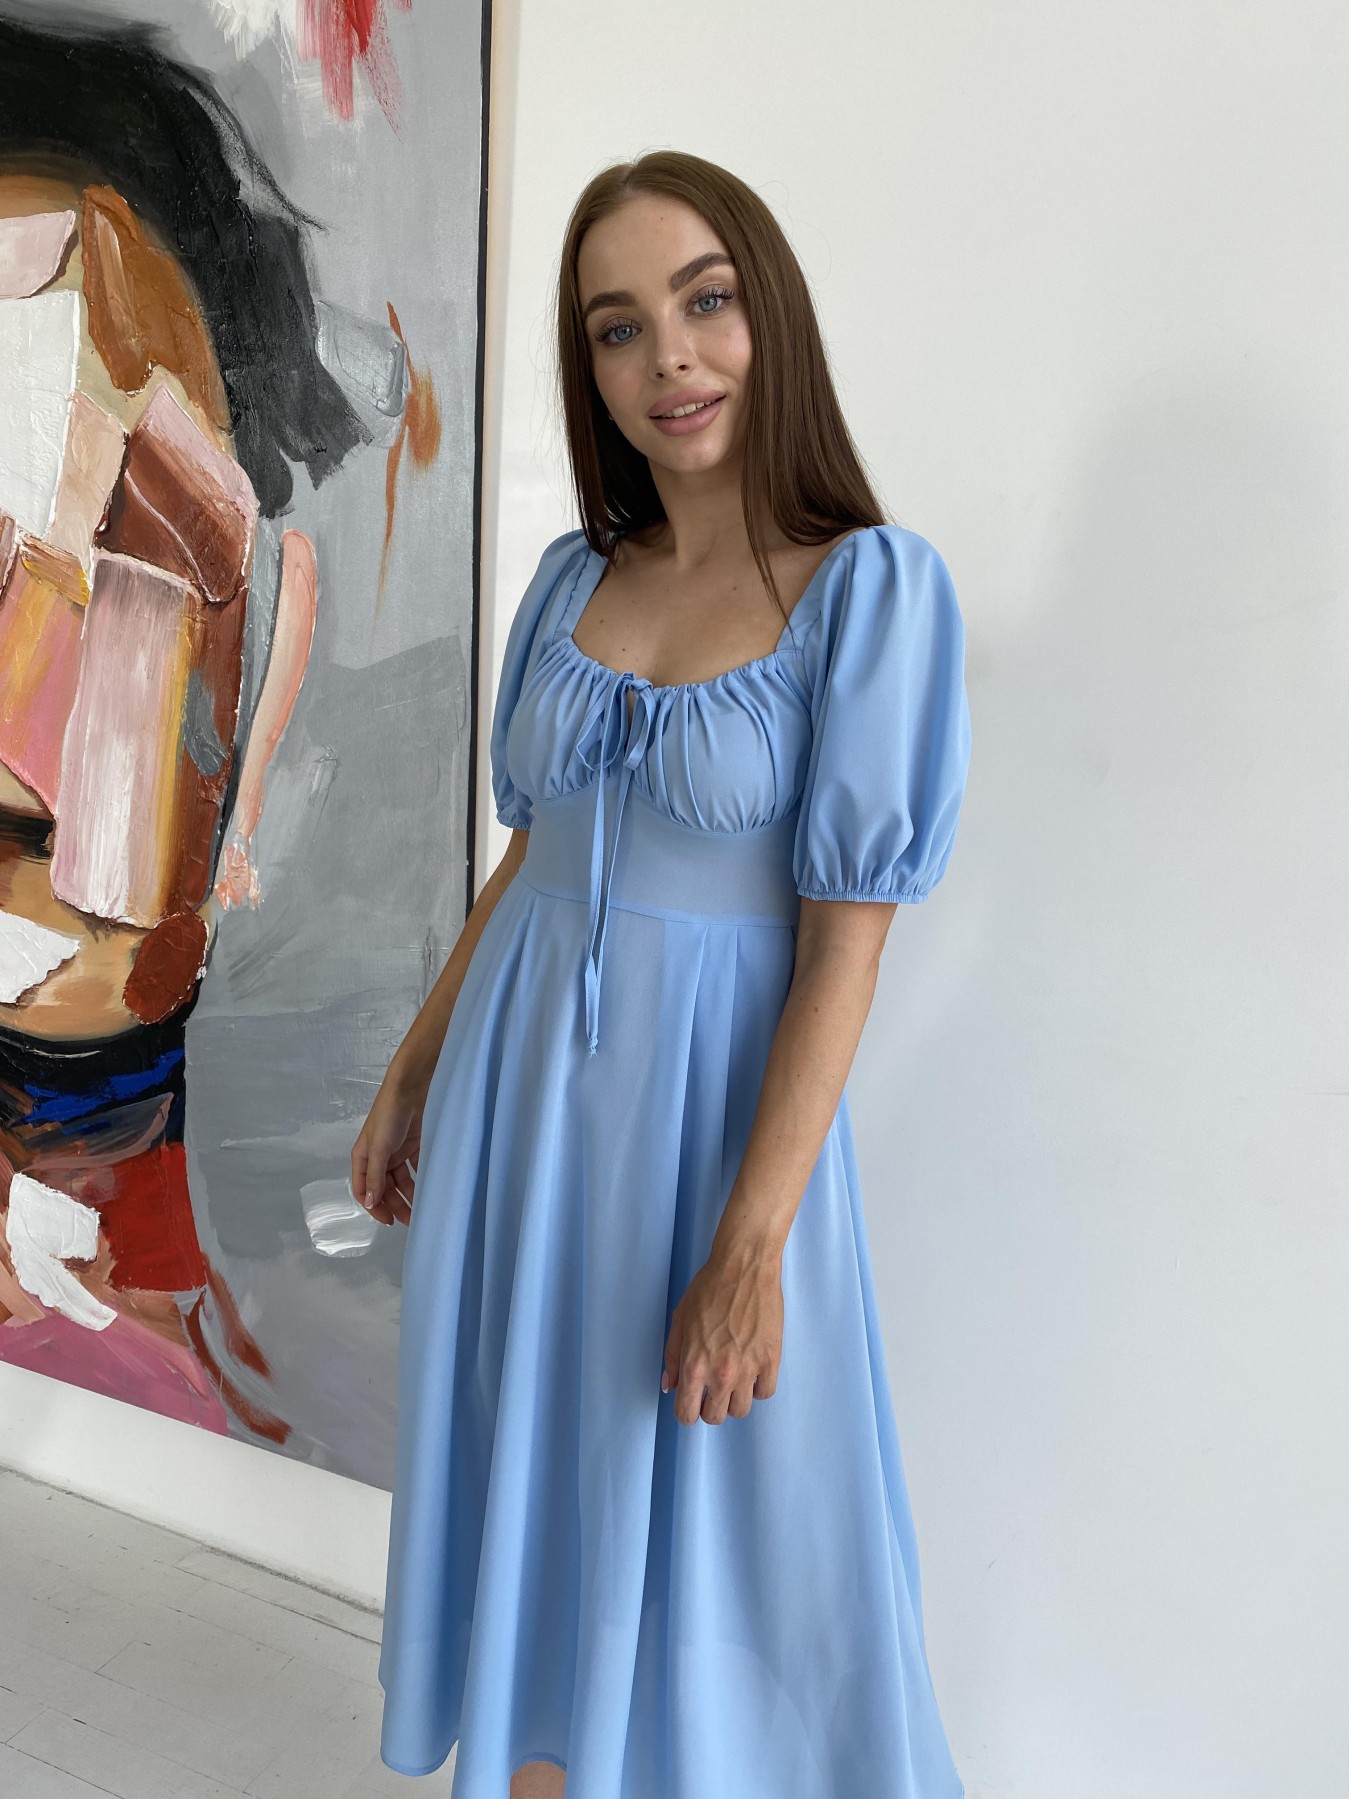 Кисес Миди платье из шифона креп 11443 АРТ. 48206 Цвет: Голубой 18 - фото 5, интернет магазин tm-modus.ru